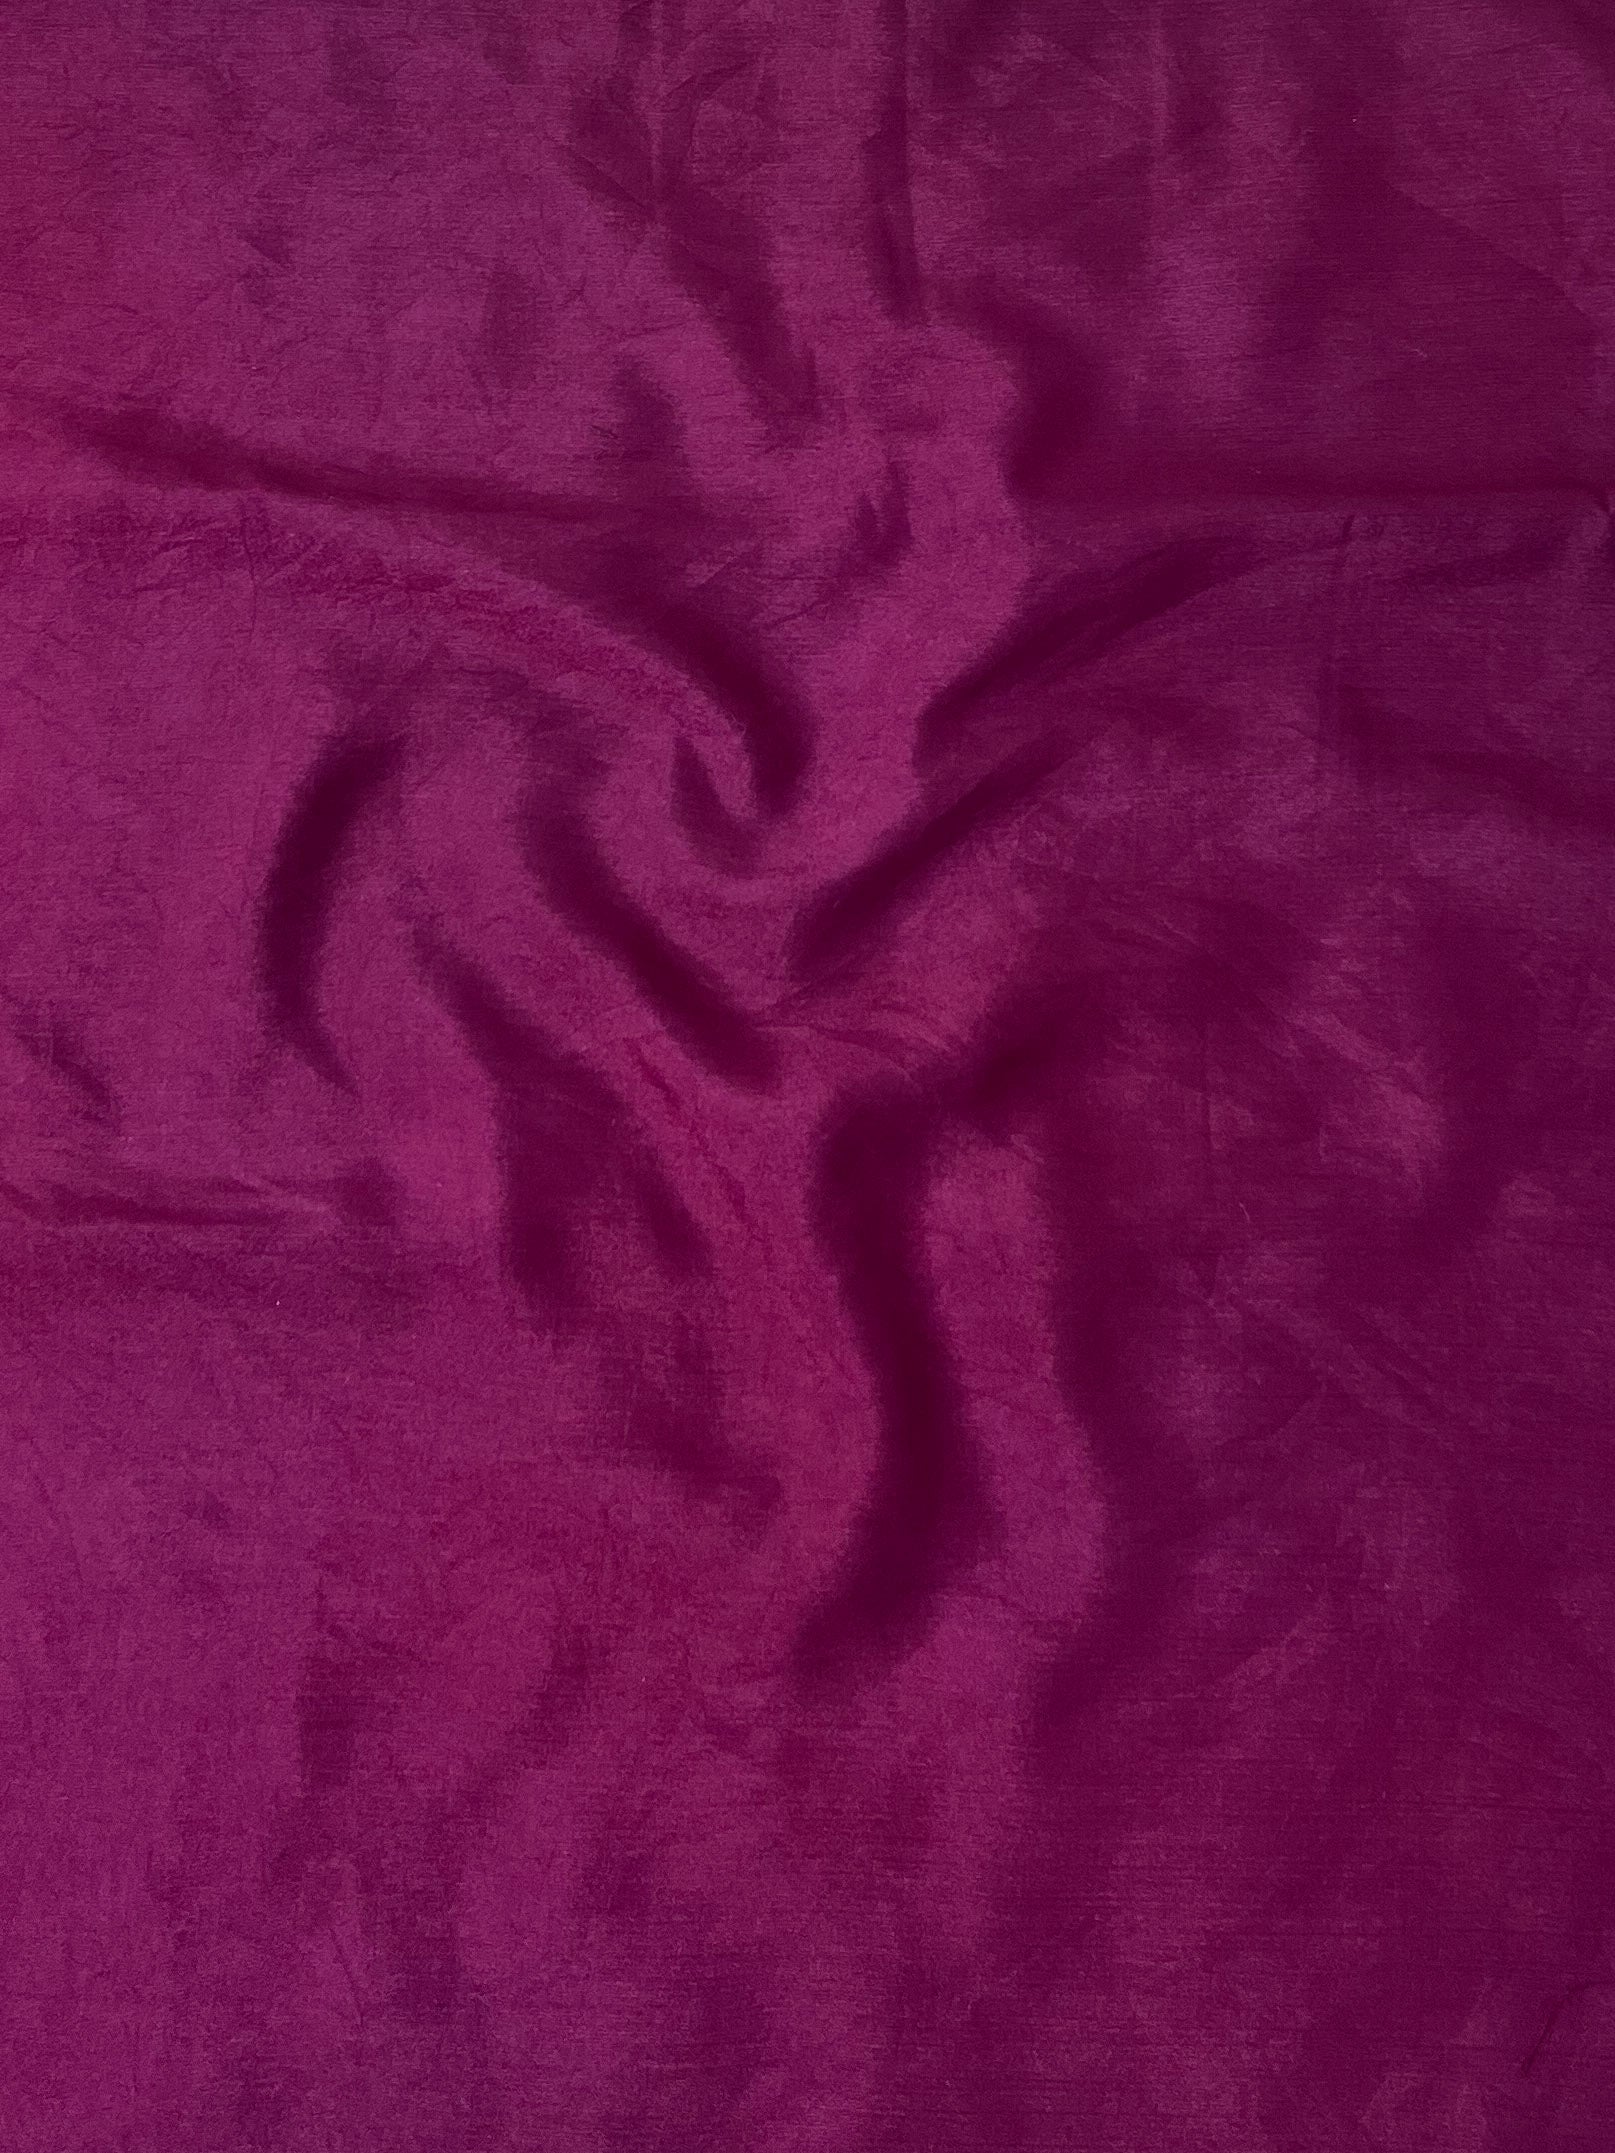 Banarasee Cotton Silk Salwar Kameez Fabric With Zari Work-Purple